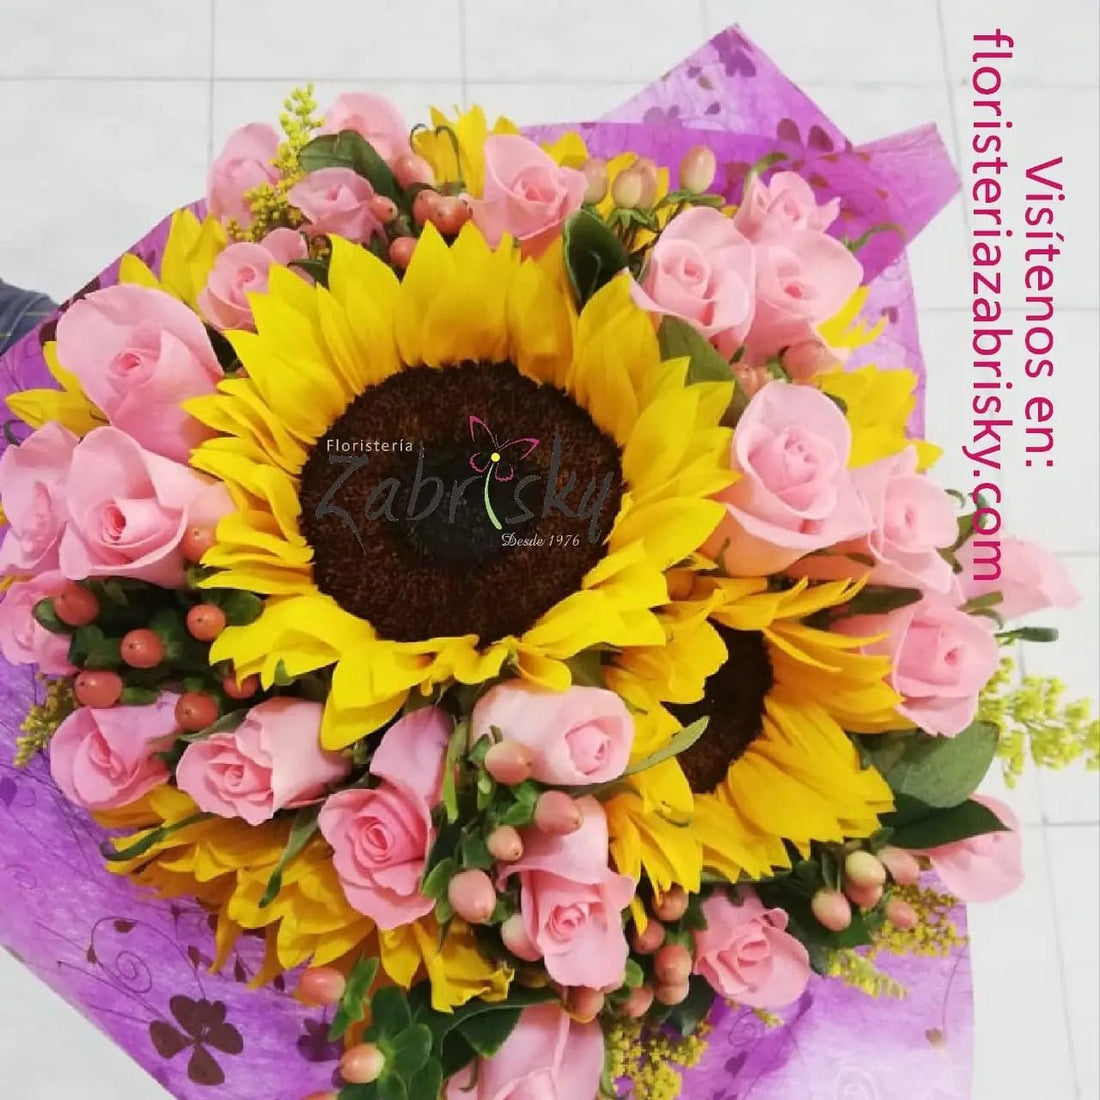 El encanto de las Flores - Floristería Zabrisky